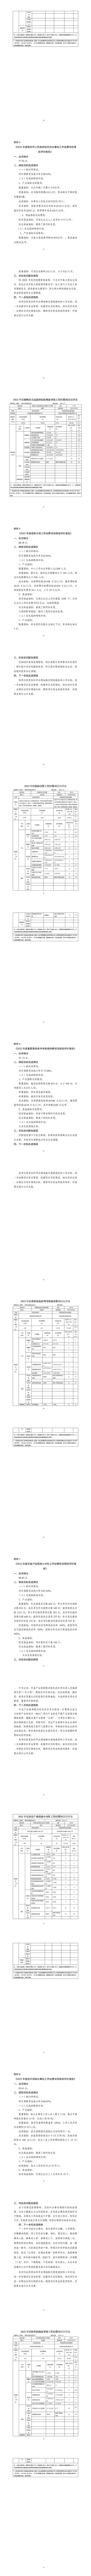 705001荆州市招商促进中心（本级）2022年度部门决算(2)_03.jpg